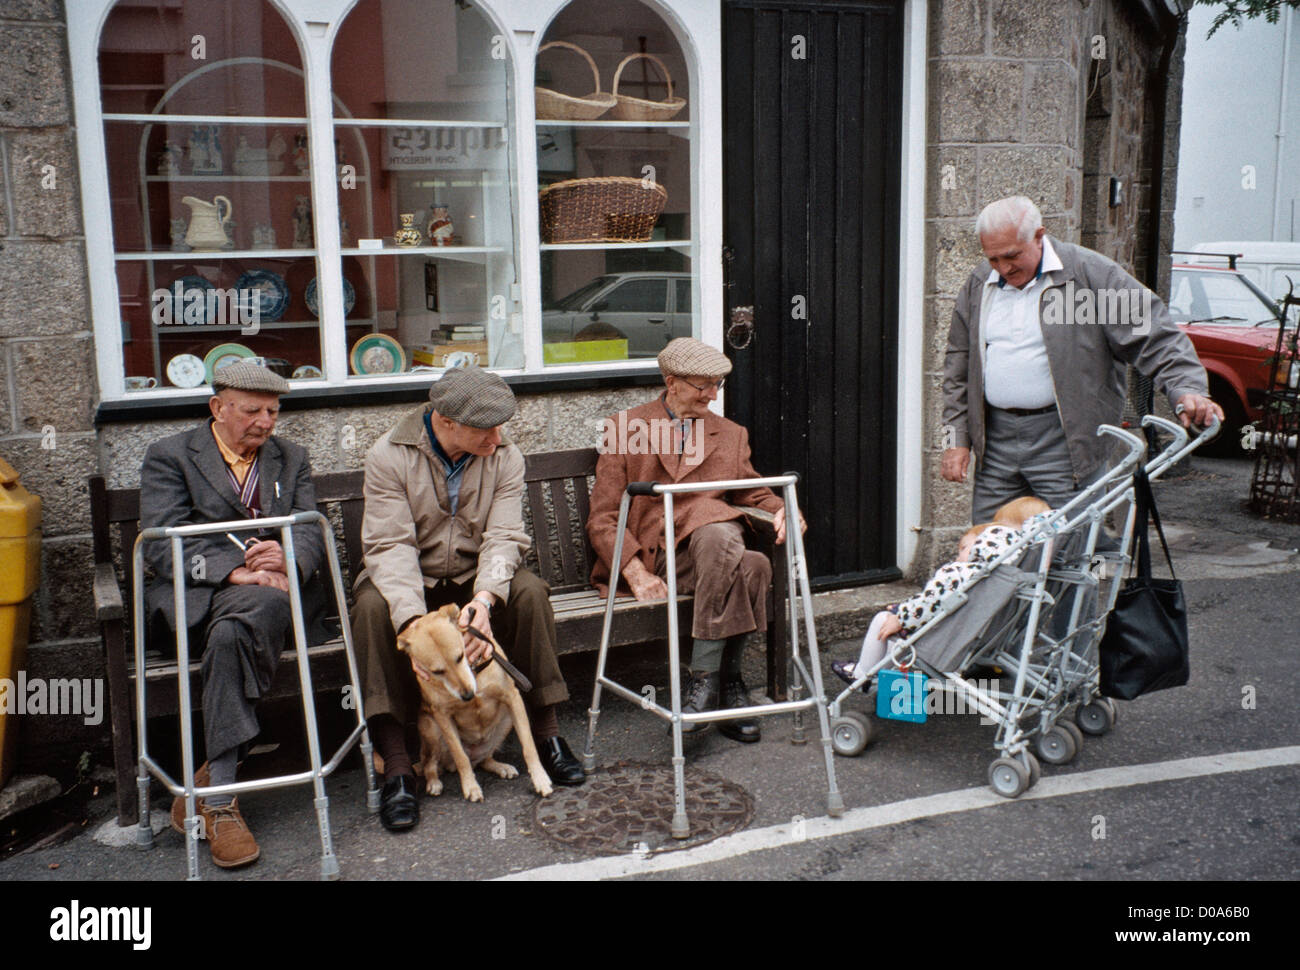 Grand-père avec grand enfant visiter de vieux hommes zimmer frames assis sur un banc à l'avant du shop Banque D'Images